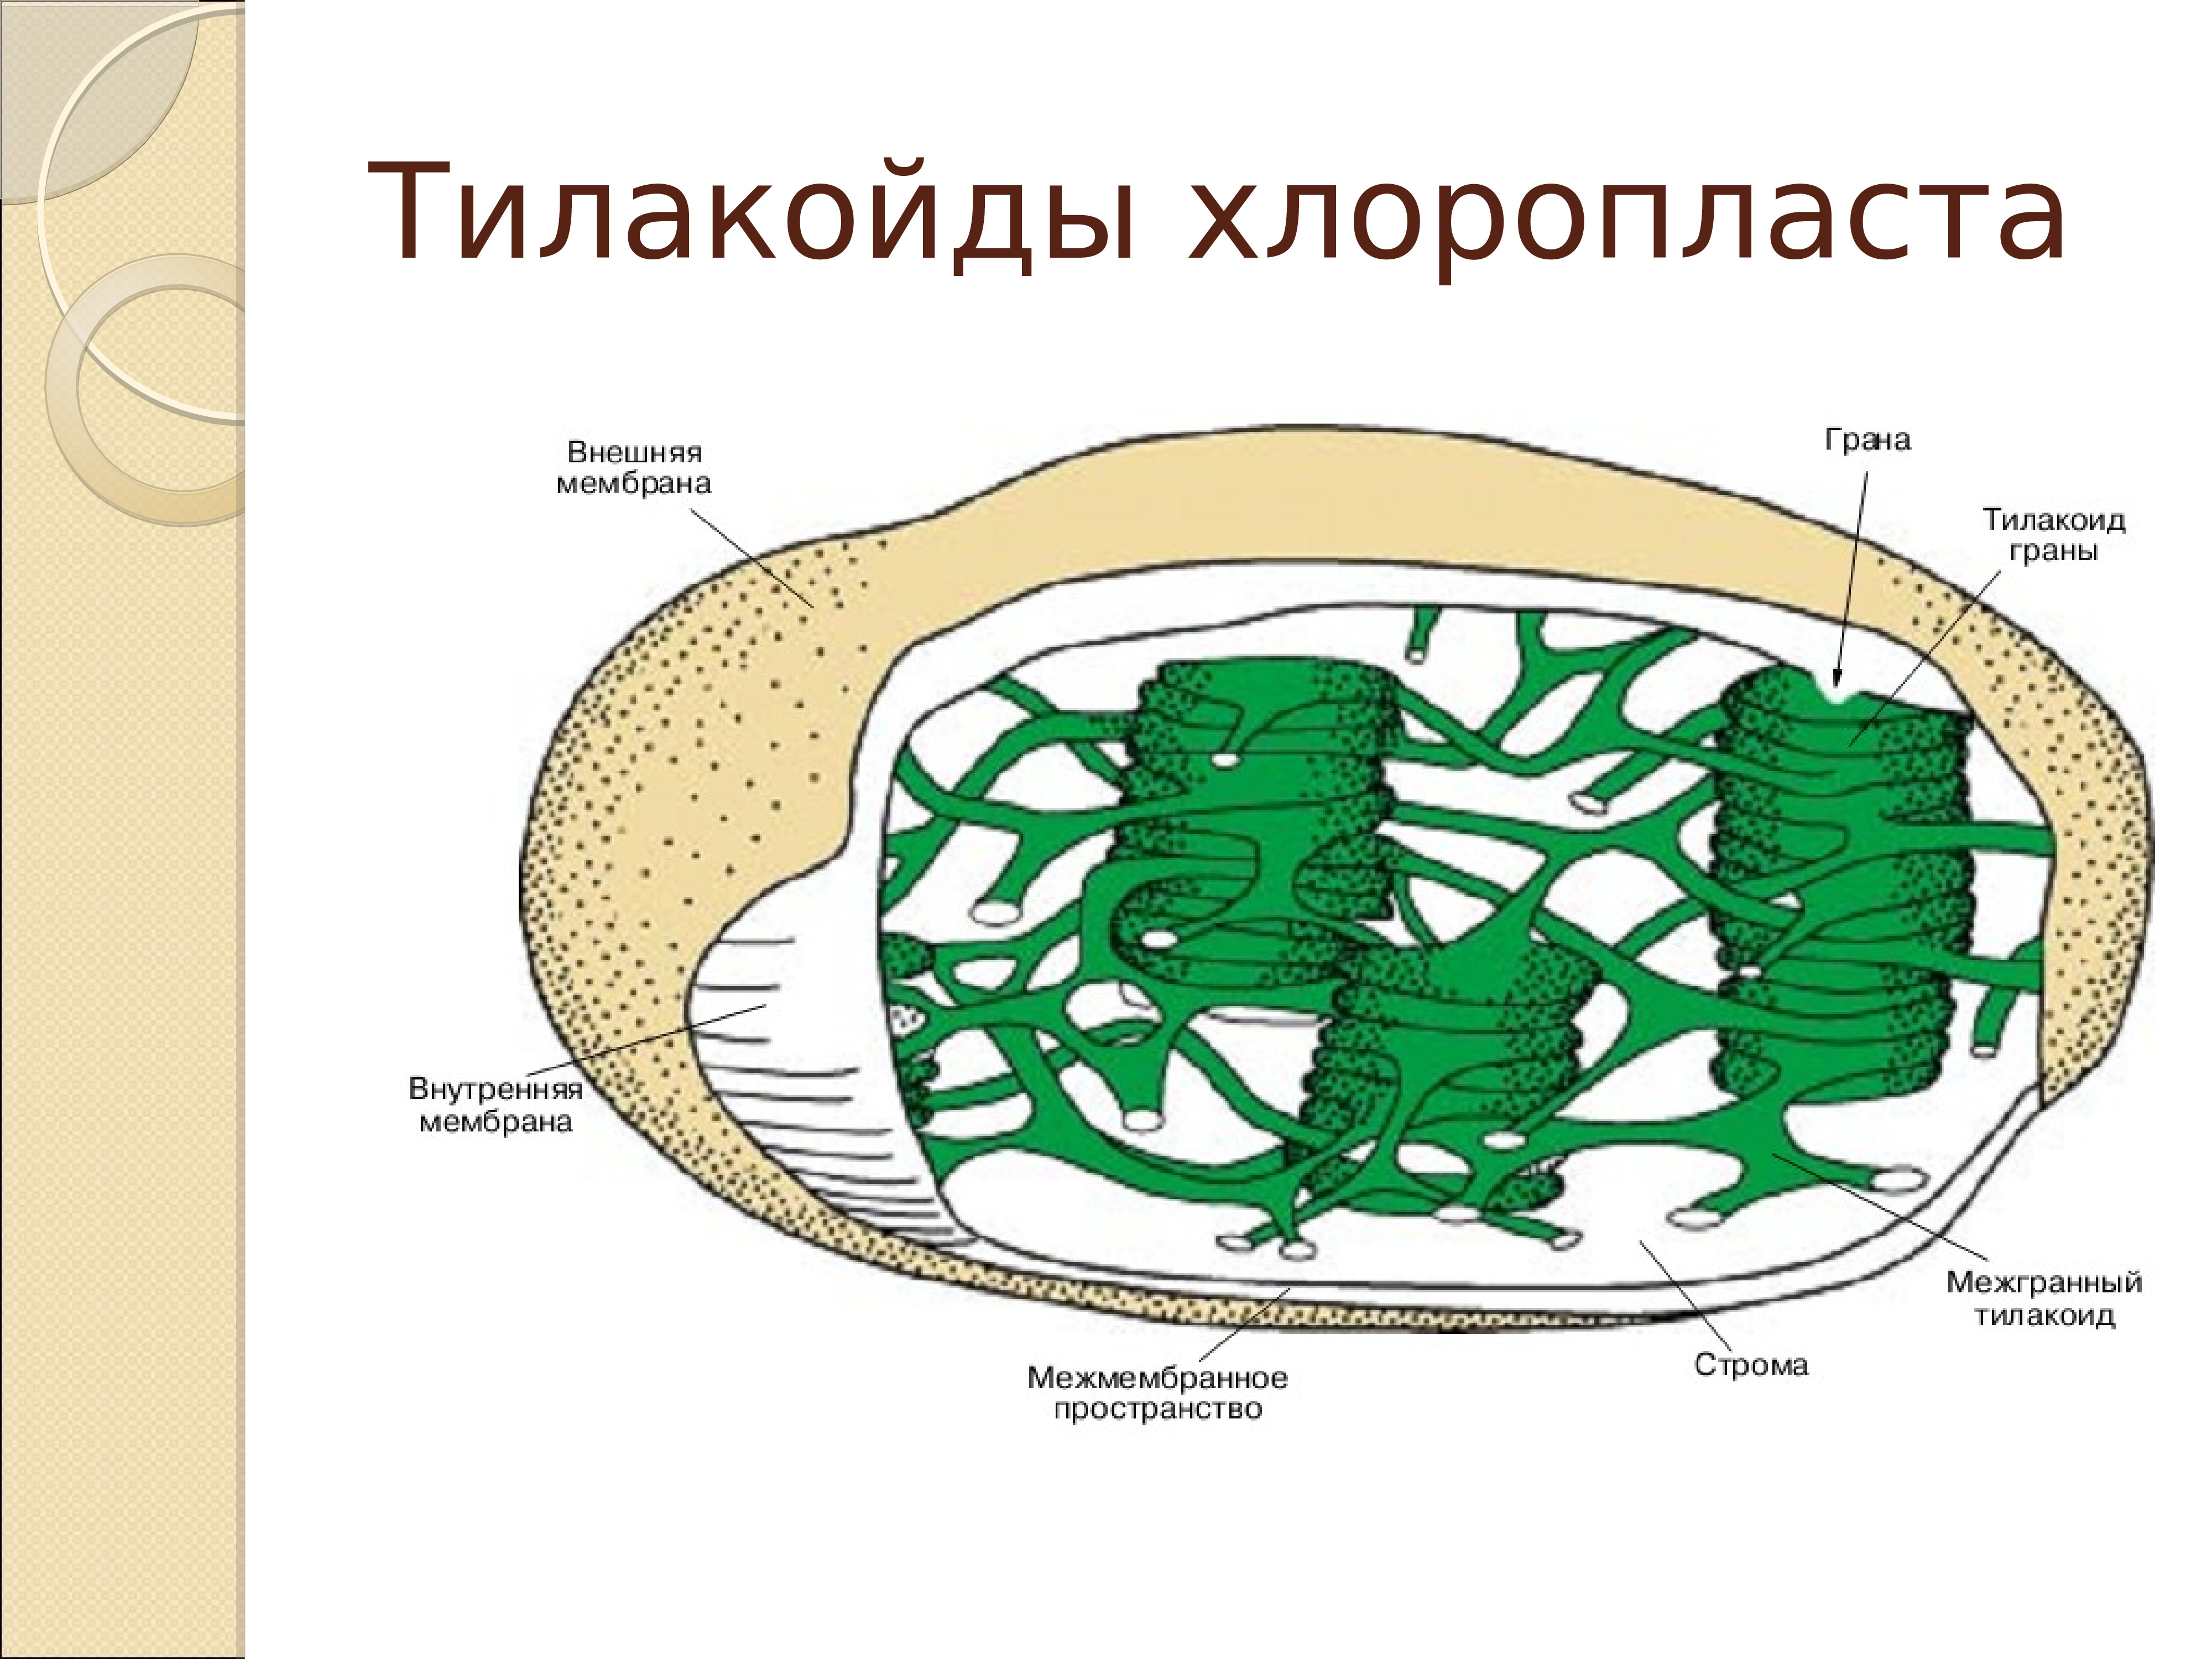 Хлоропласт грана тилакоидов. Внутреннее строение хлоропласта. Строение хлоропласта фотосинтез. Схема строения хлоропласта. Межмембранное пространство хлоропласта.